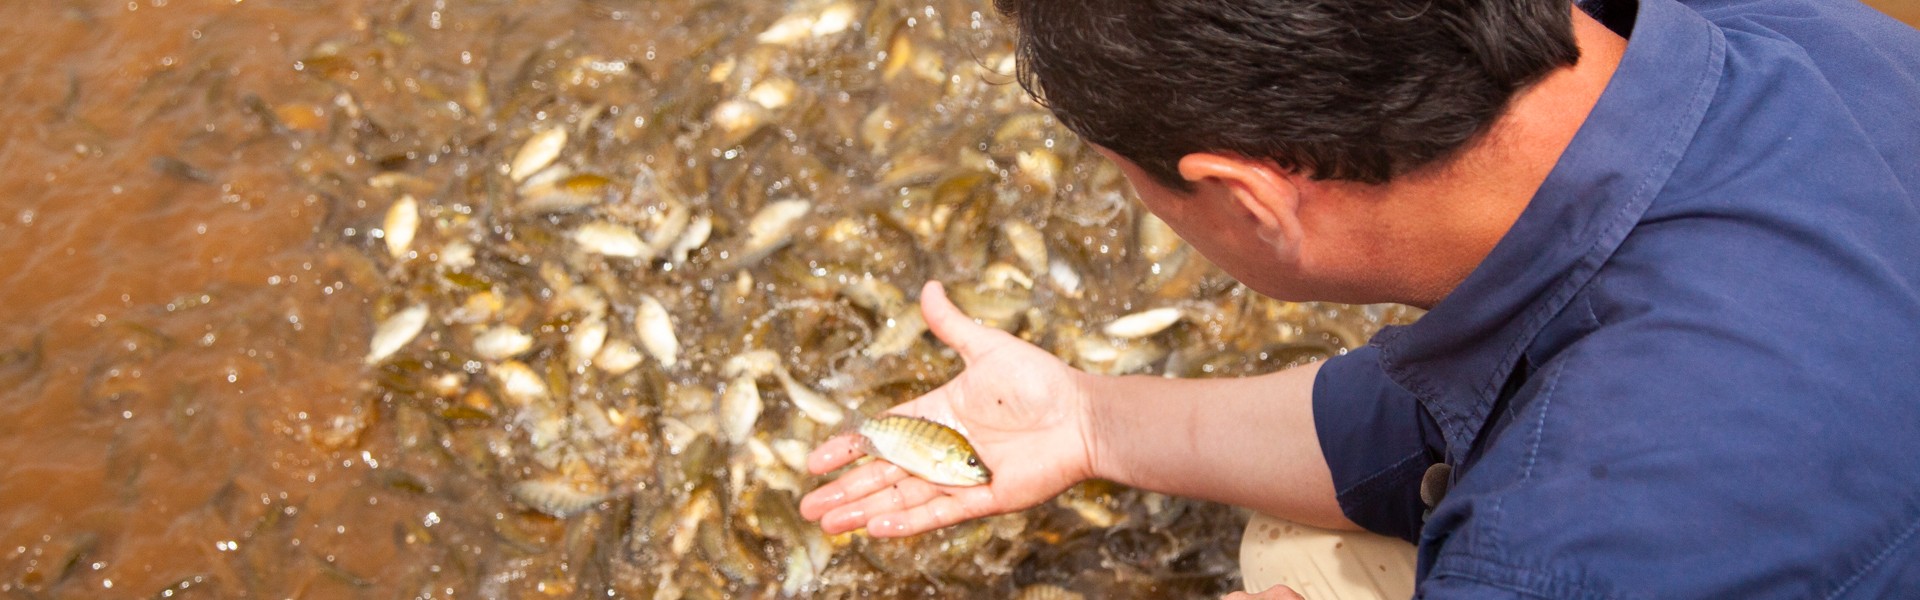 Curso de Controle de Qualidade do Pescado ocorre em março